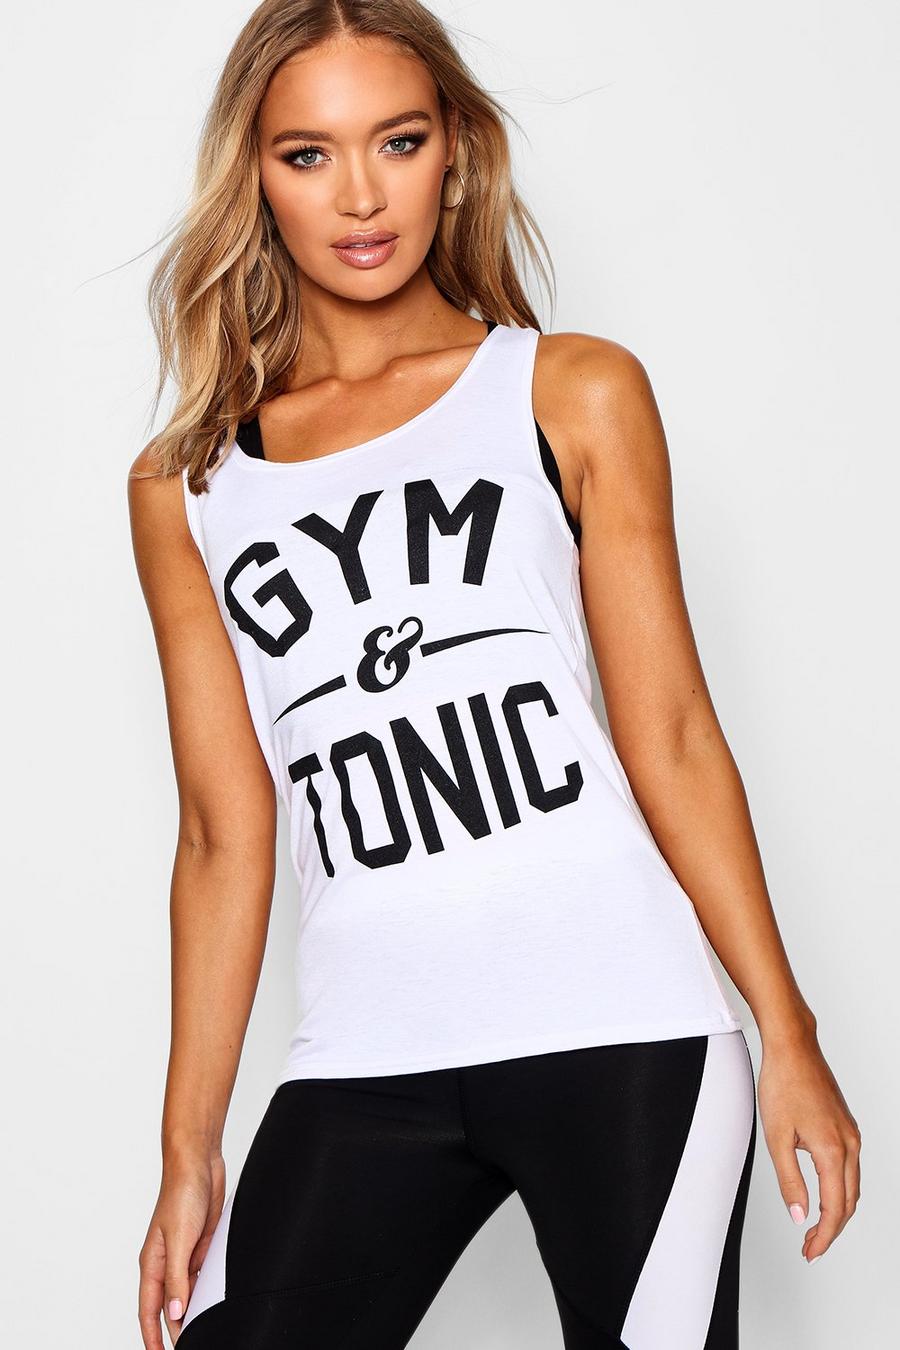 Camiseta de tirantes de correr ajustada “Gym & Tonic” image number 1